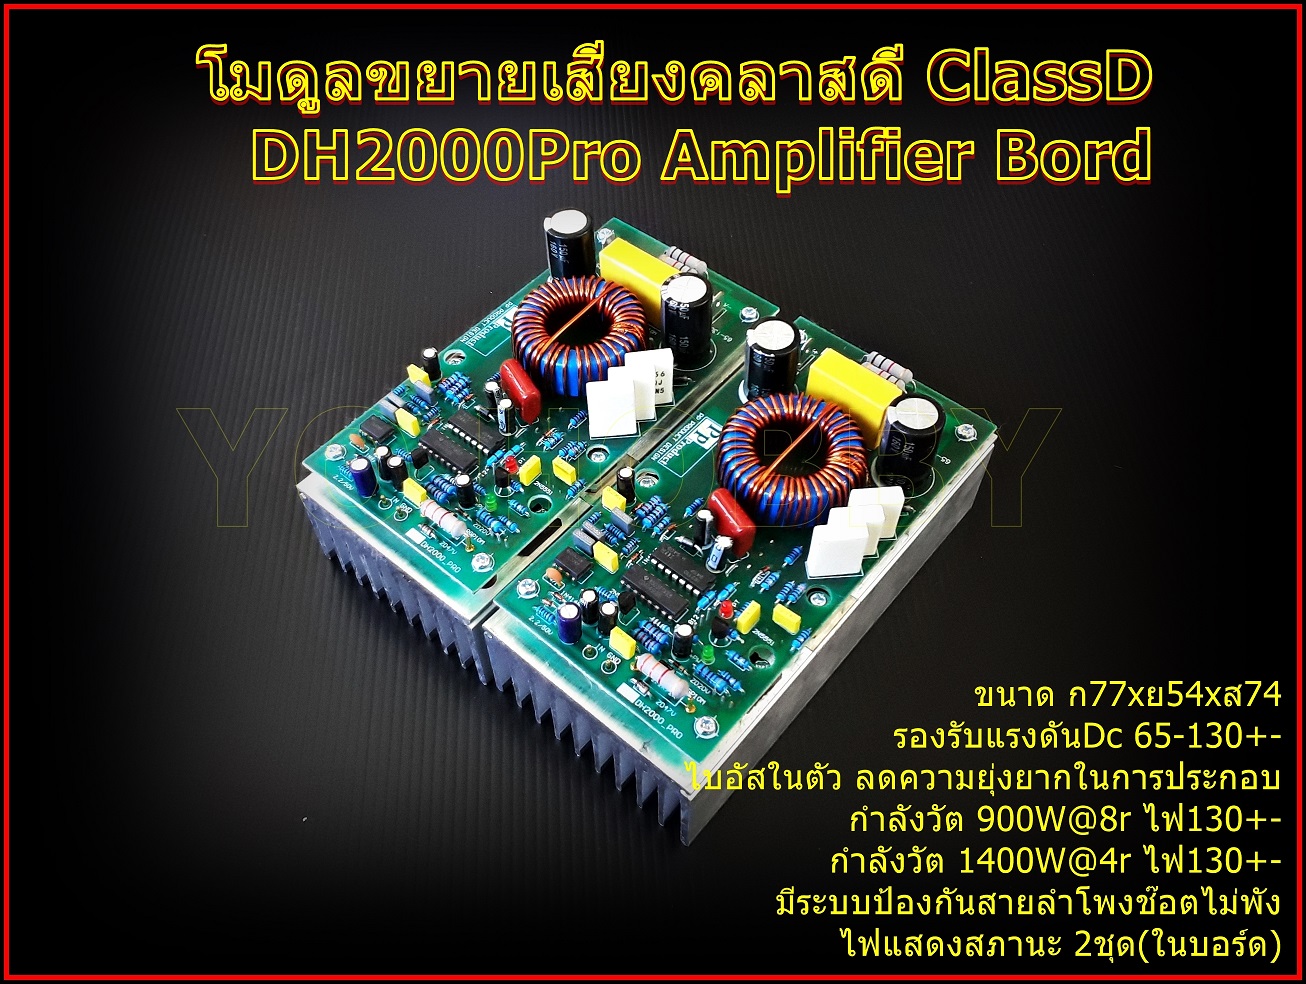 เกี่ยวกับสินค้า DH2000Pro Amplifier Bord โมดูลขยายเสียงคลาสดี ClassD